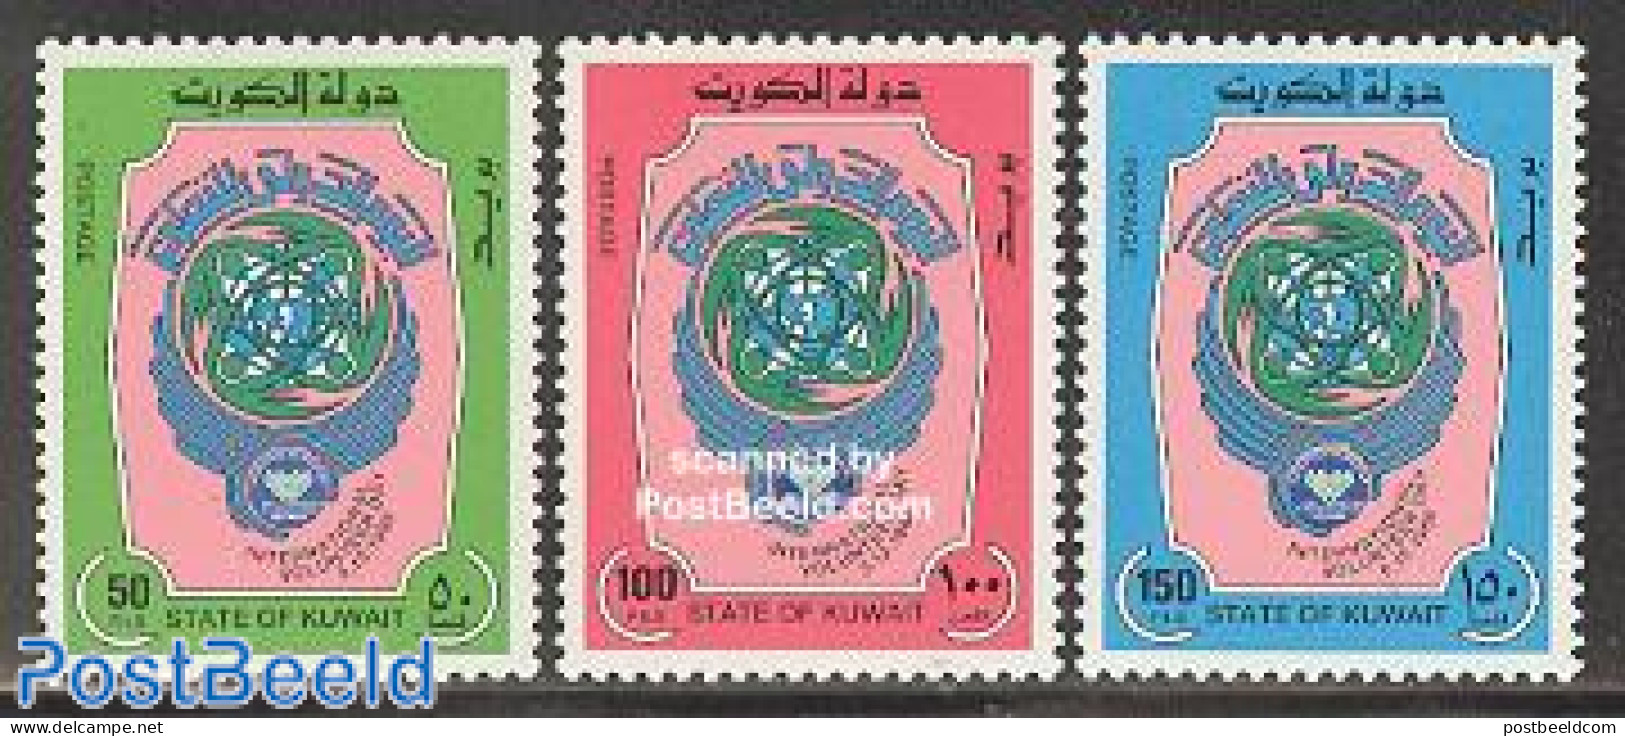 Kuwait 1988 Volunteers 3v, Mint NH - Kuwait